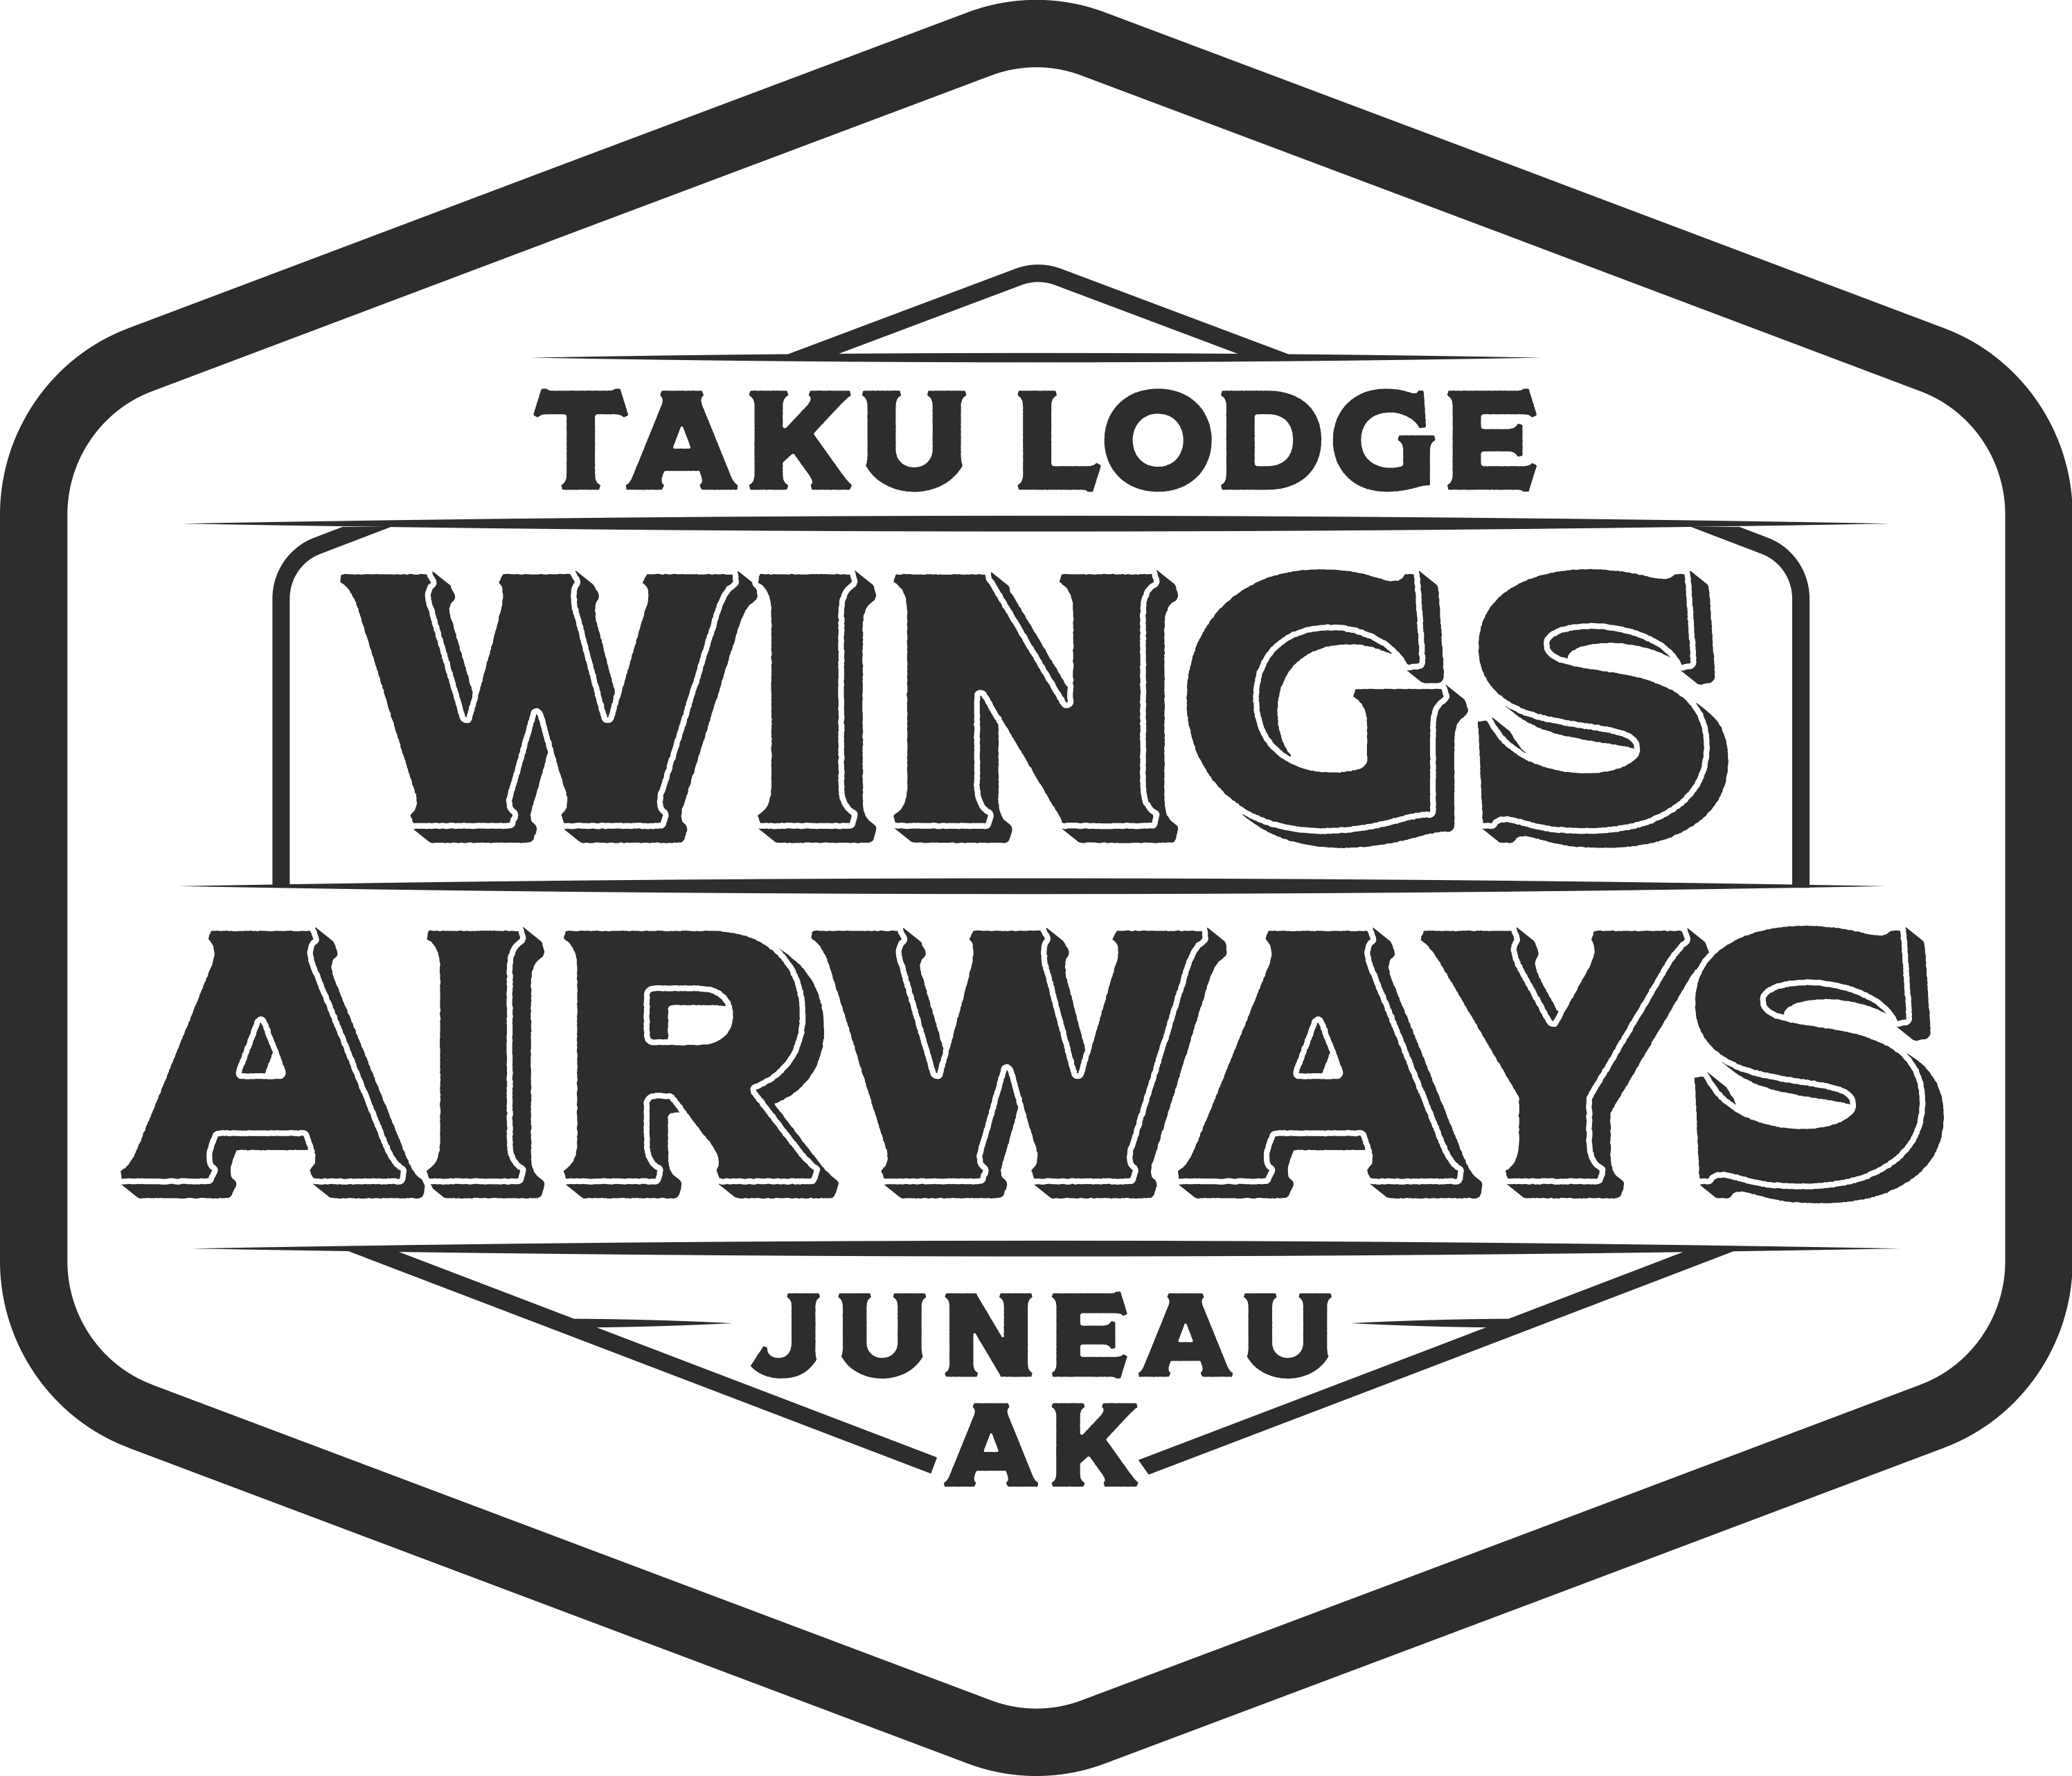 Taku Lodge Wings Airways logo